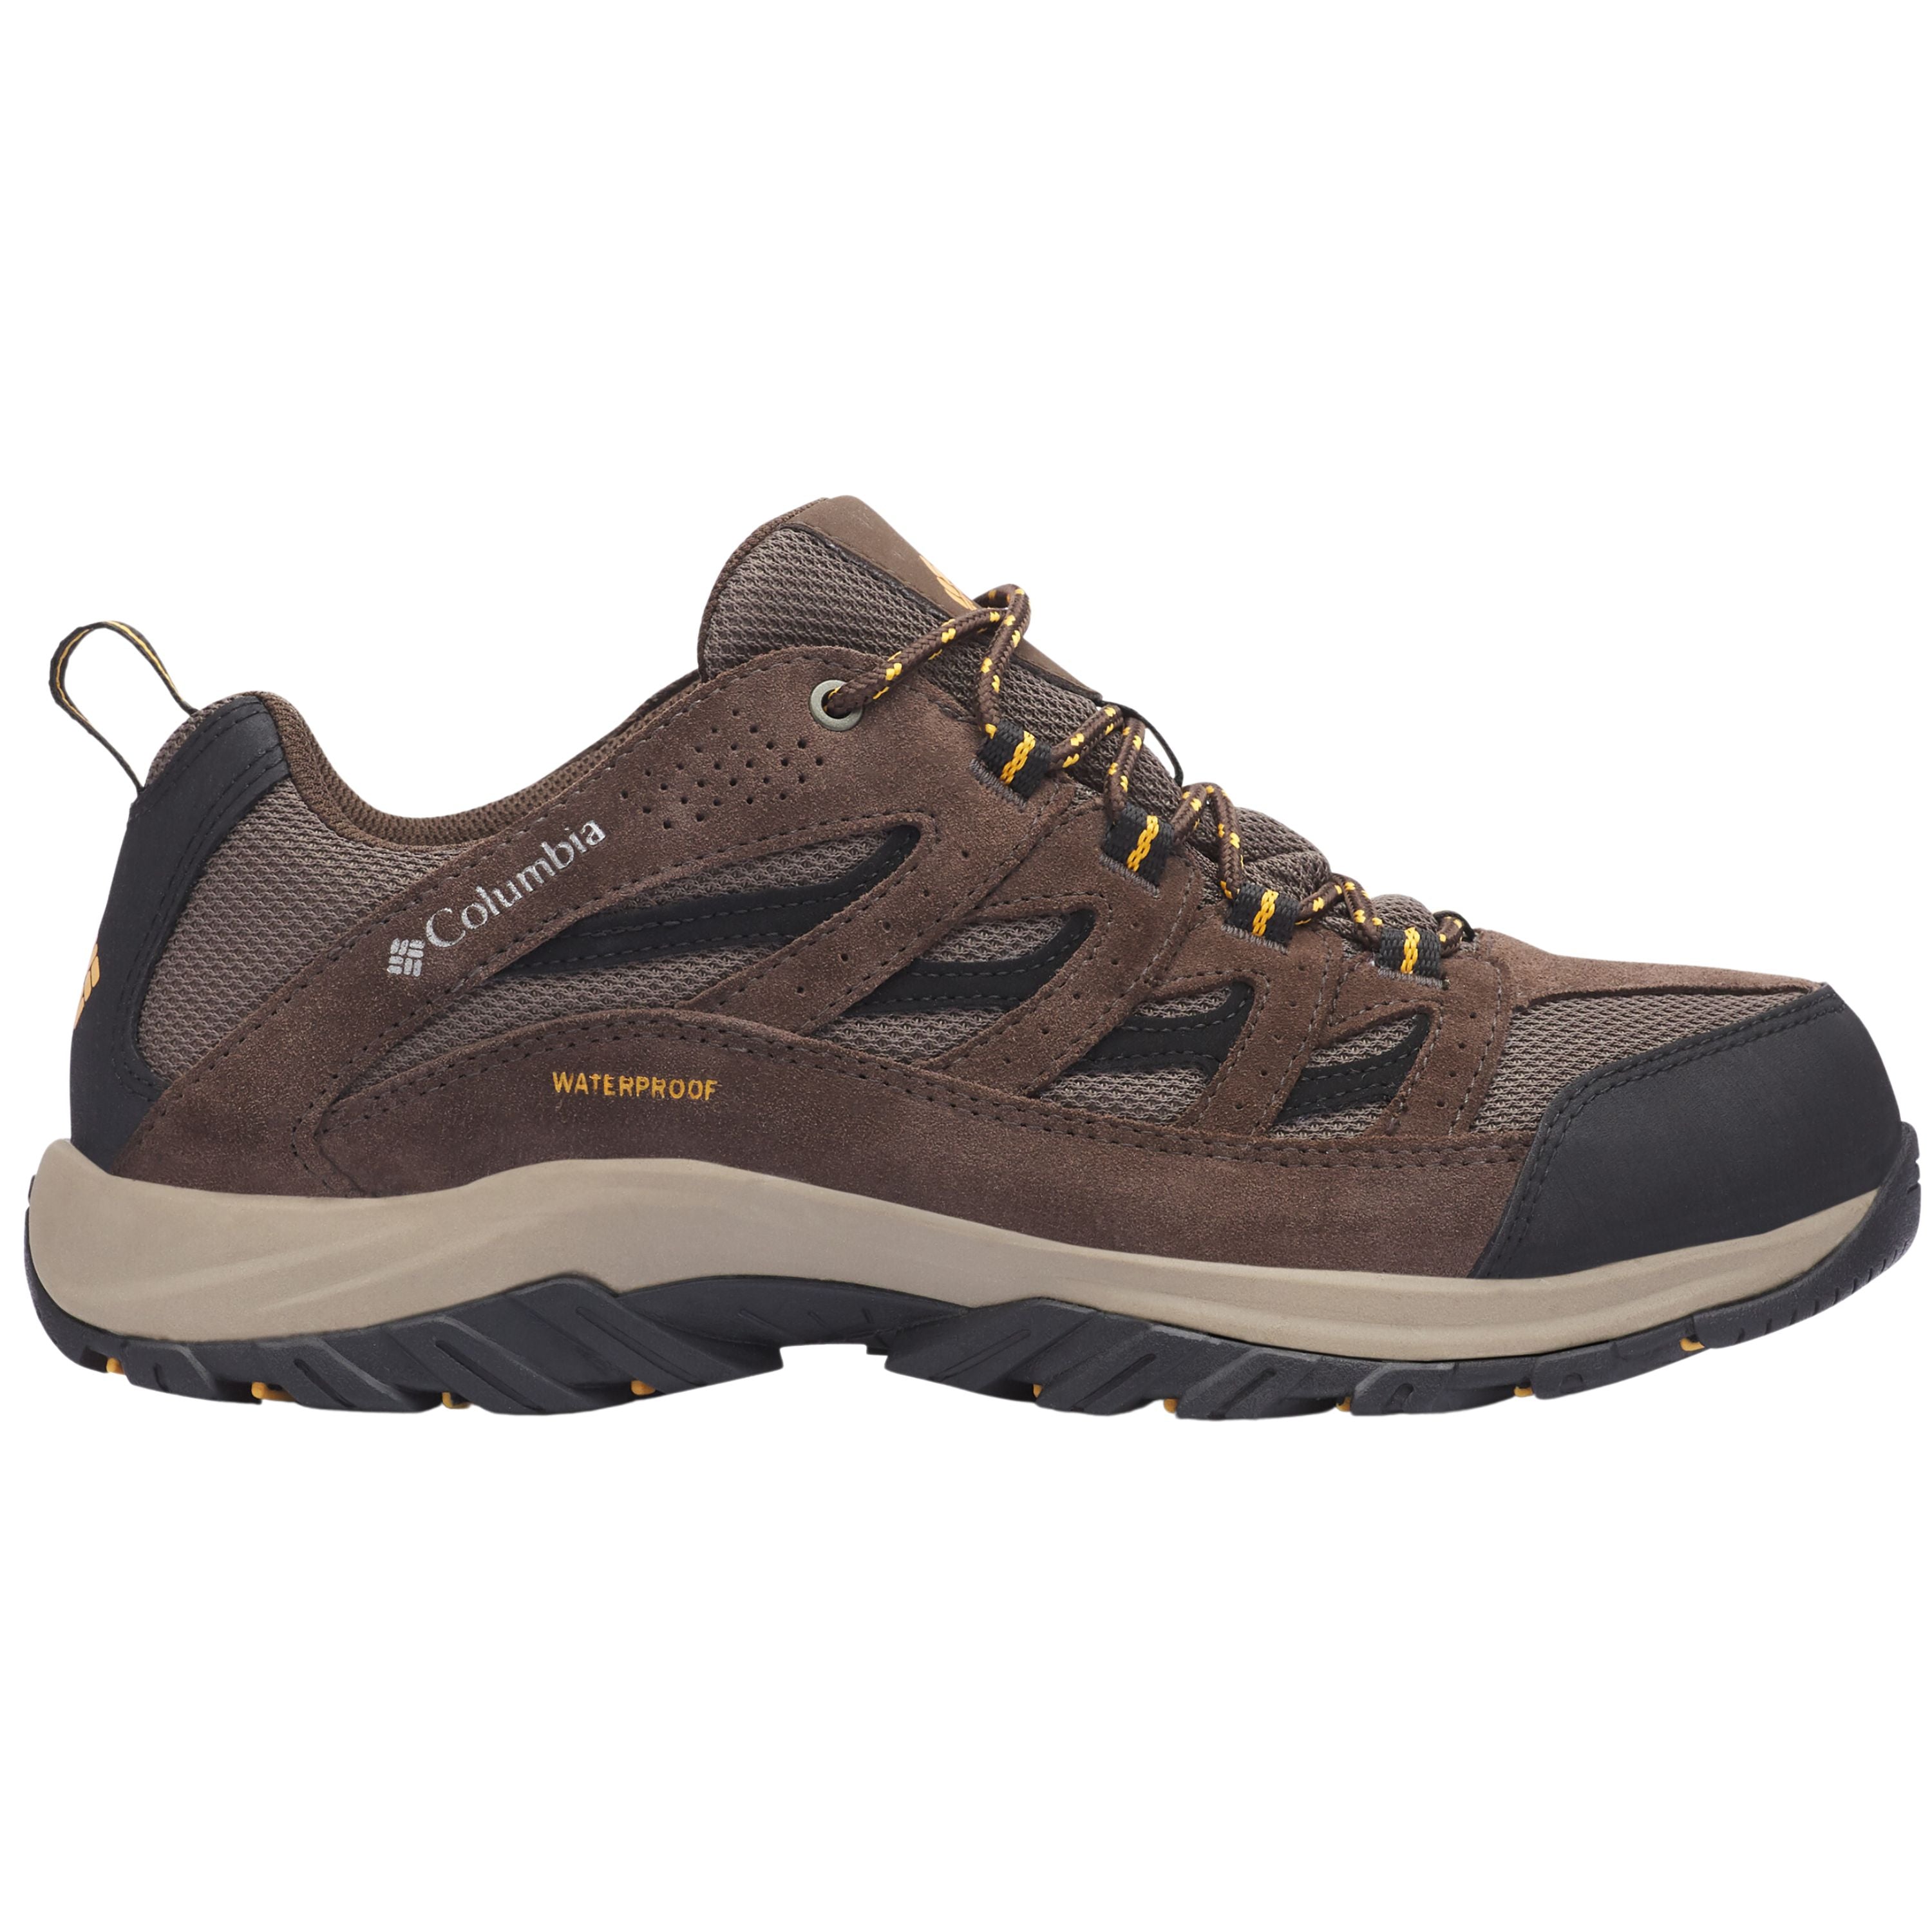 Chaussures de randonnée "Crestwood" - Homme||"Crestwood" Hiking shoes - Men's